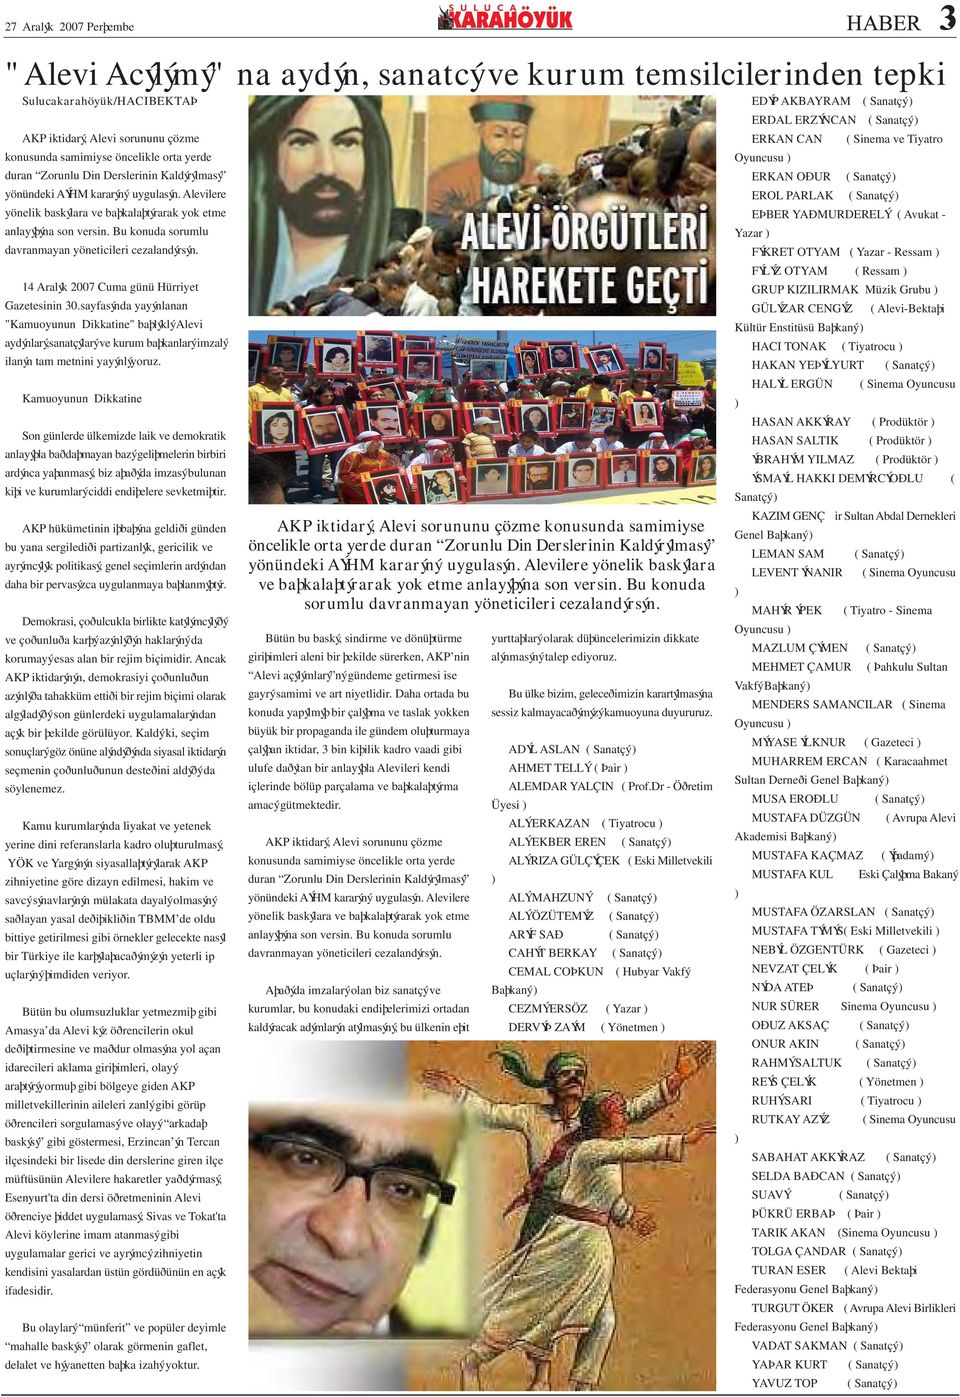 14 Aralýk 2007 Cuma günü Hürriyet Gazetesinin 30.sayfasýnda yayýnlanan "Kamuoyunun Dikkatine" baþlýklý Alevi aydýnlarý,sanatçýlarý ve kurum baþkanlarý imzalý ilanýn tam metnini yayýnlýyoruz.